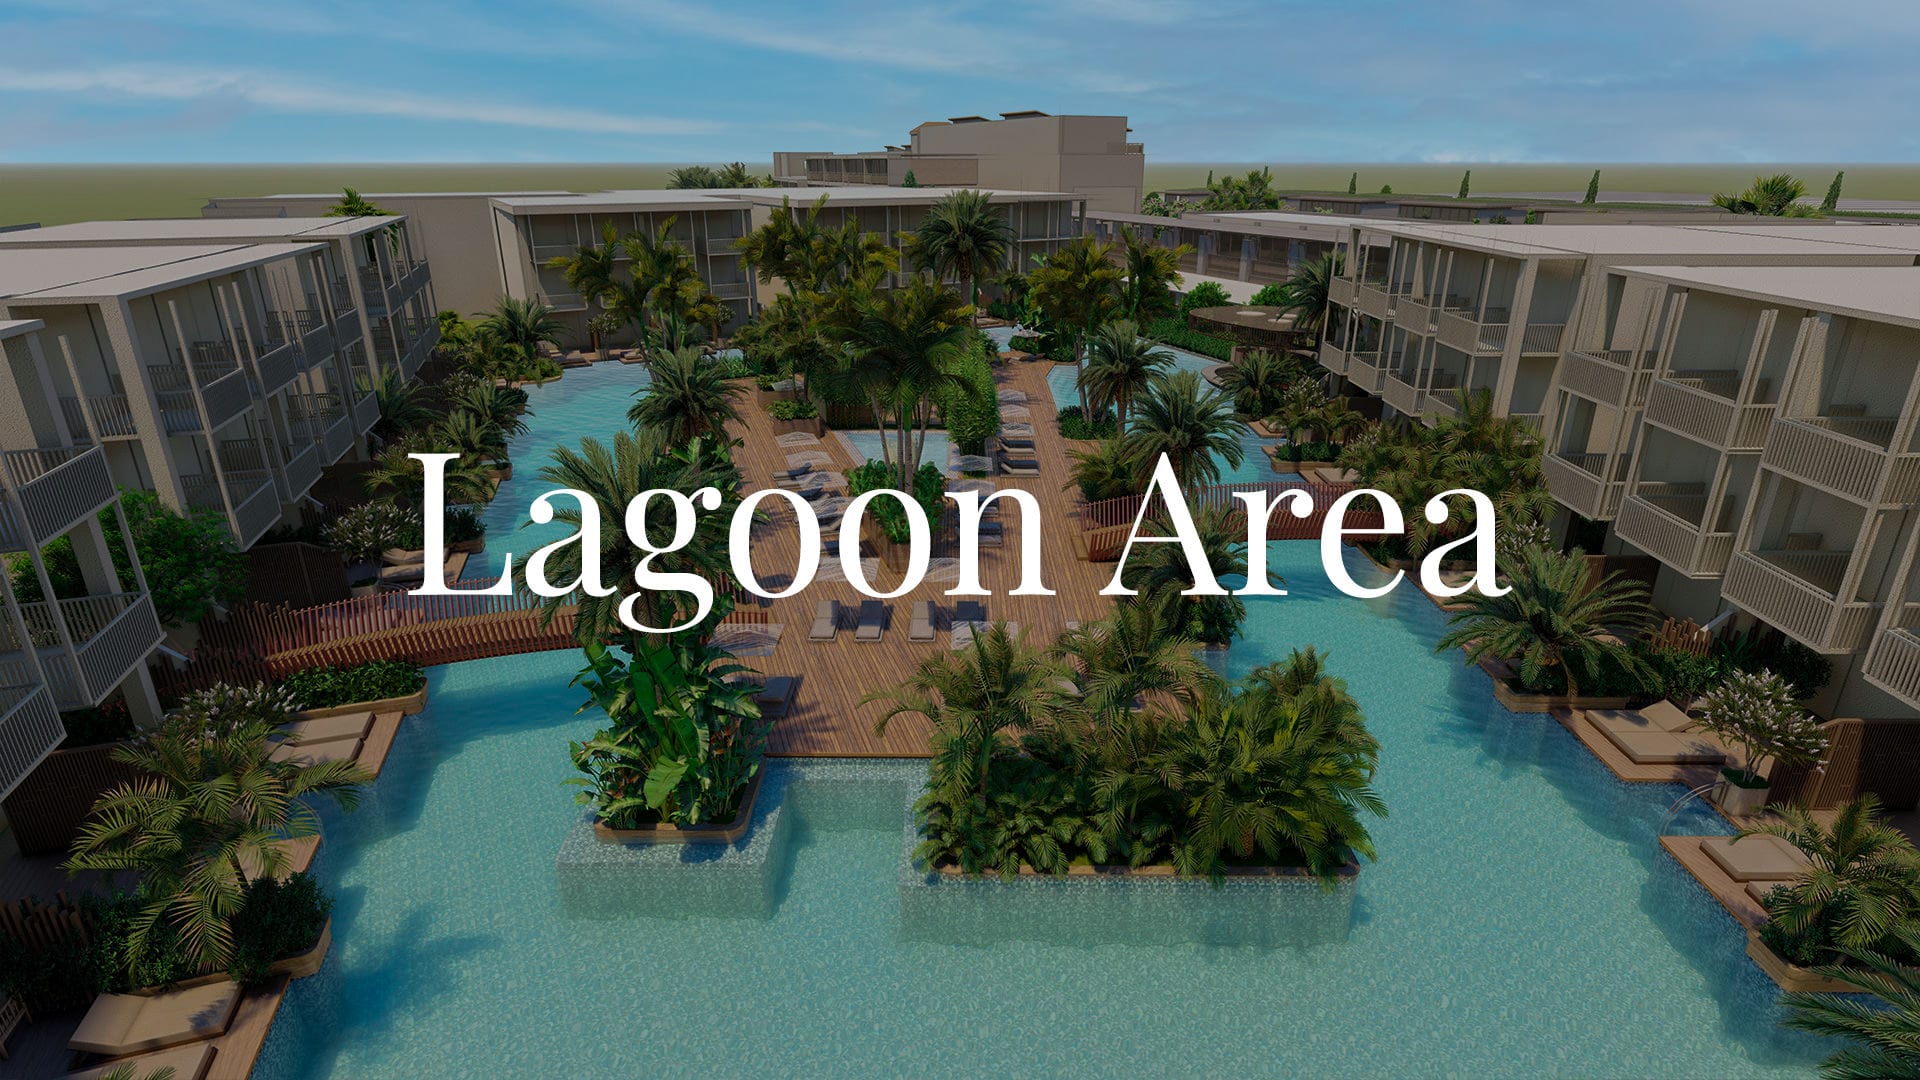 Lagoon Area